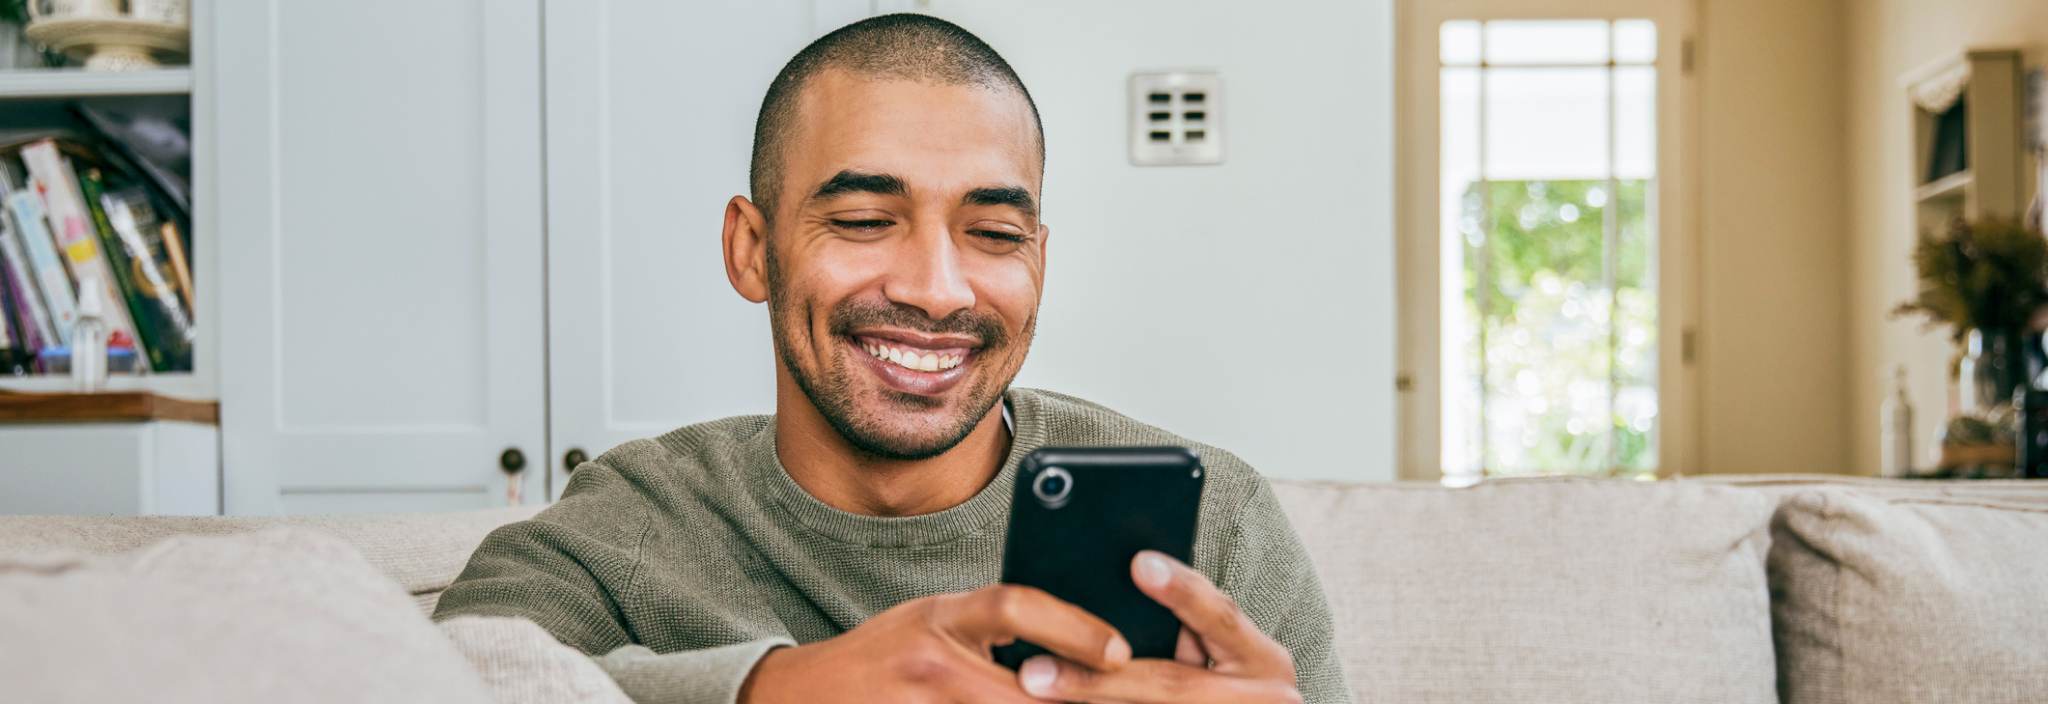 Un jeune homme sourit et fixe un téléphone cellulaire qui se trouve dans ses mains. Il est assis sur un canapé dans son salon.